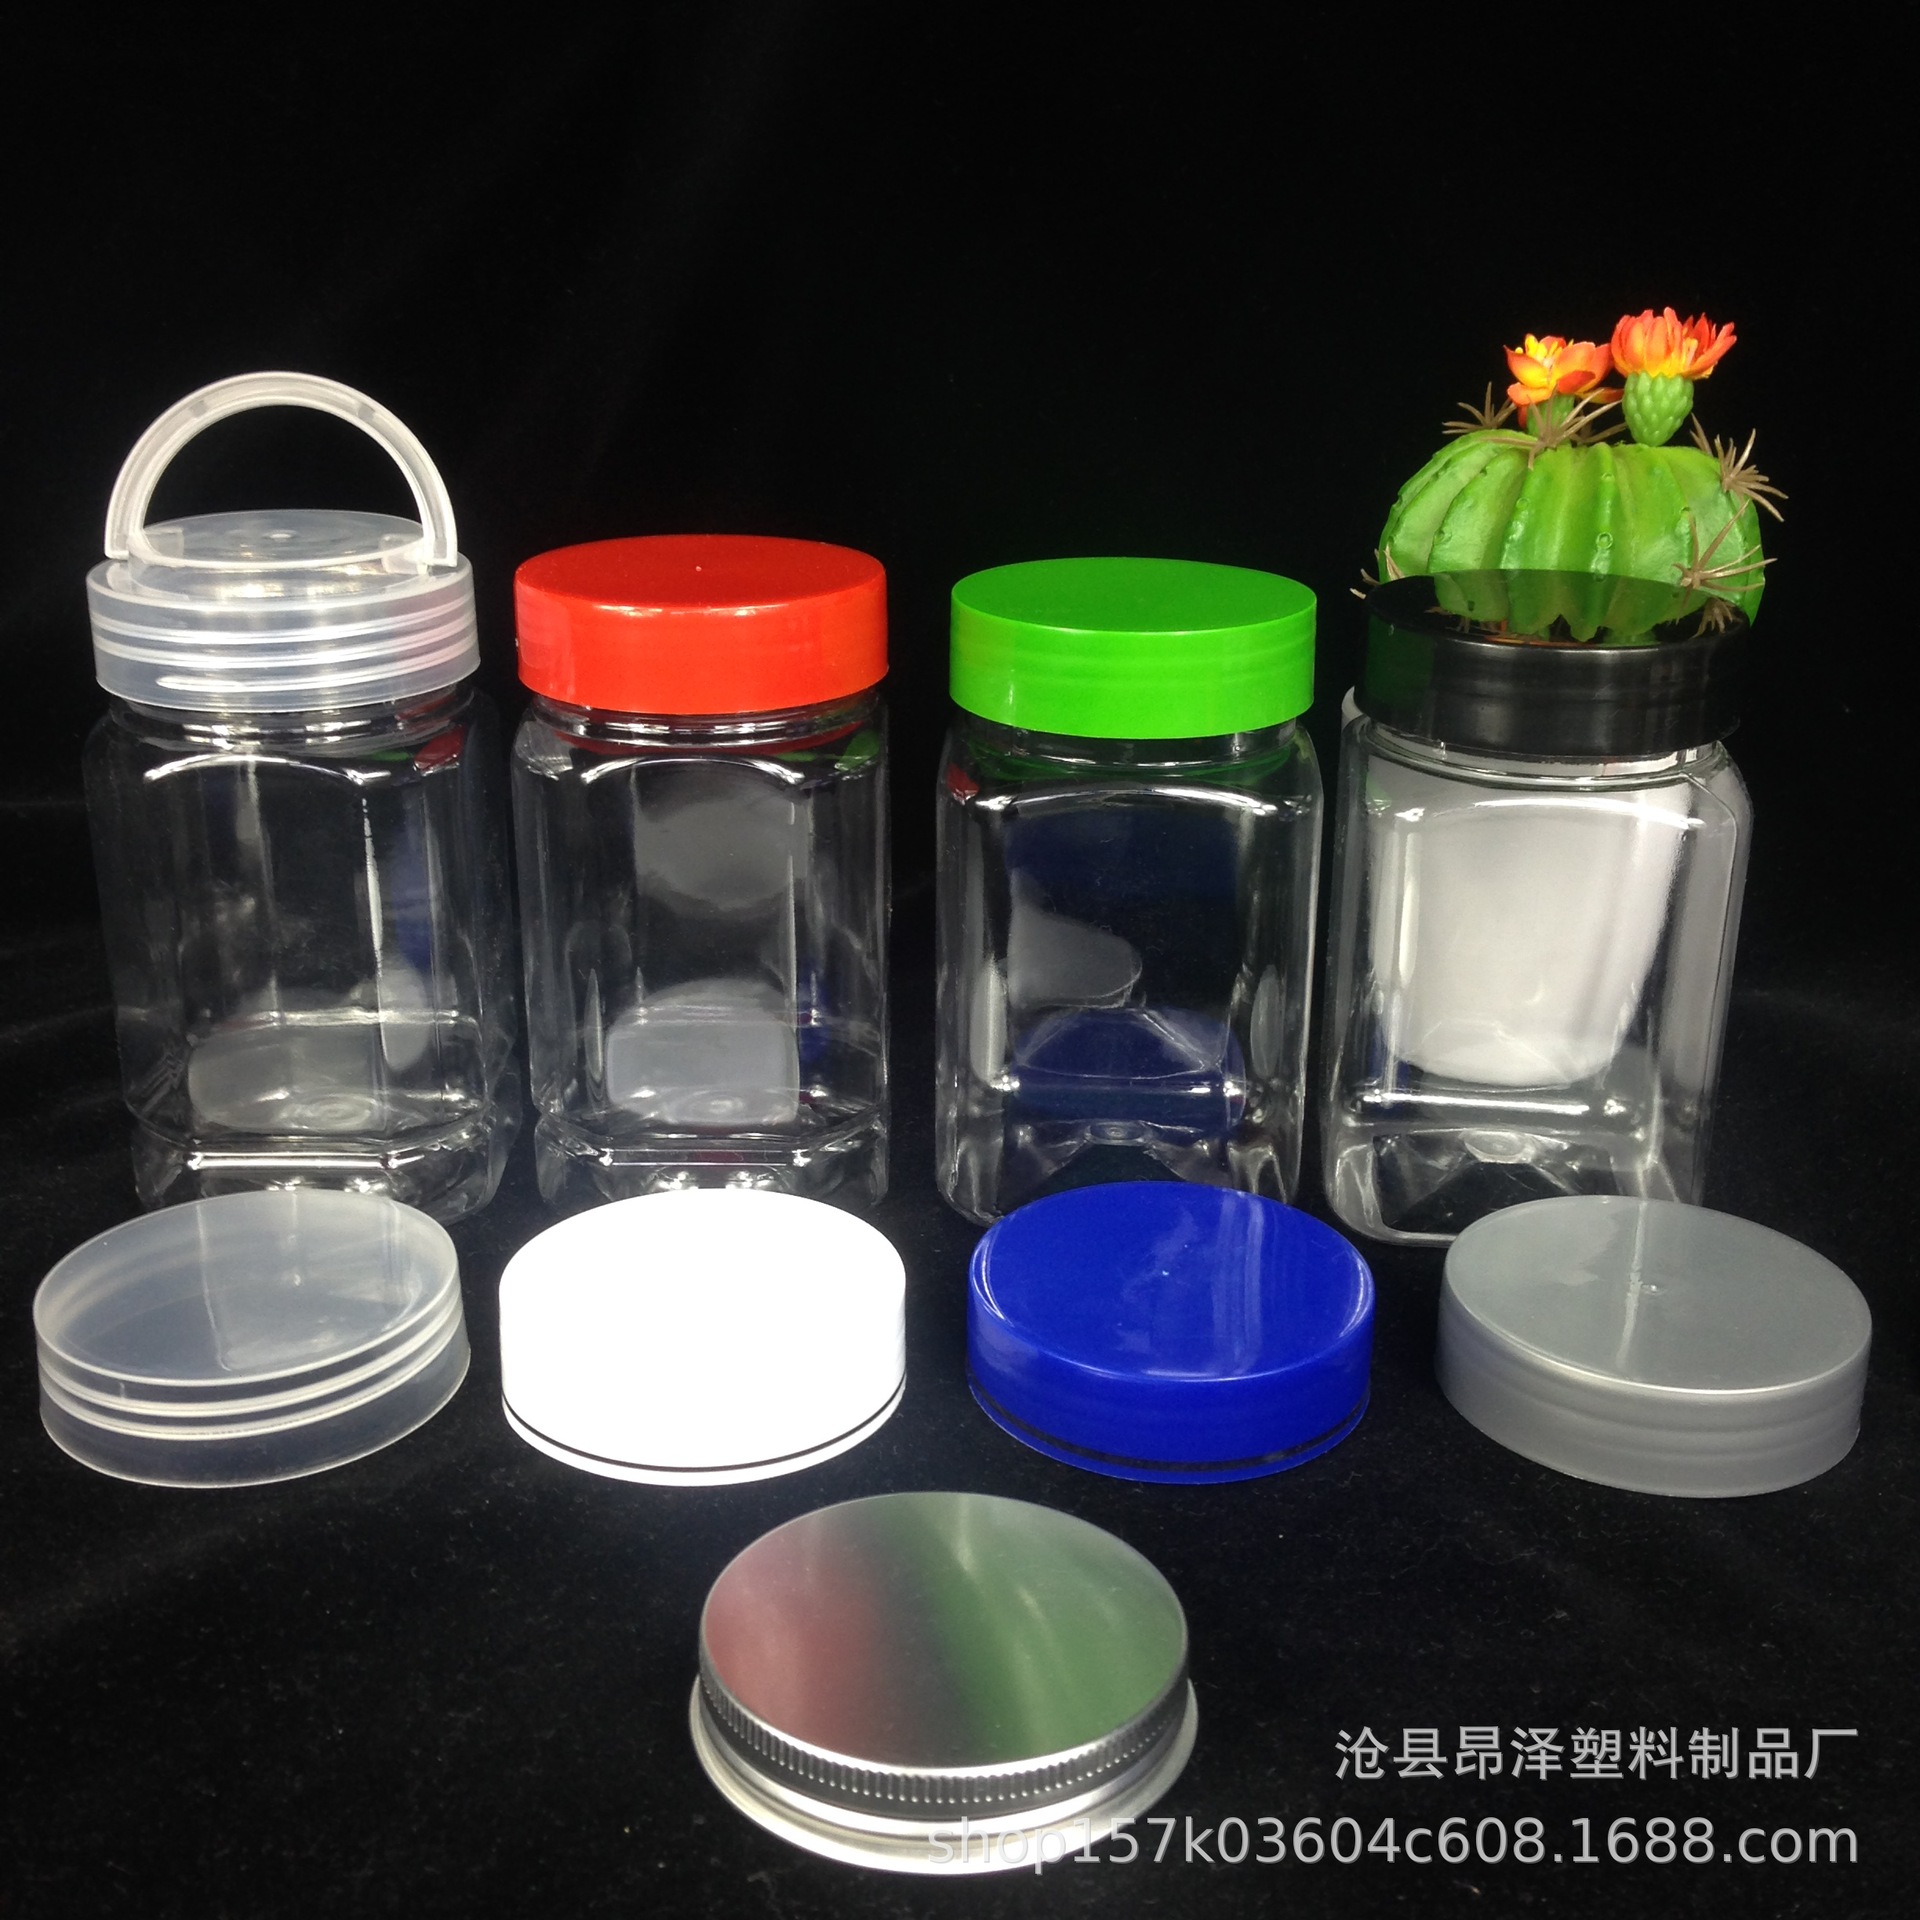 塑料透明方形八角形pet罐蜂蜜雪菊瓶内外盖现货360ml毫升